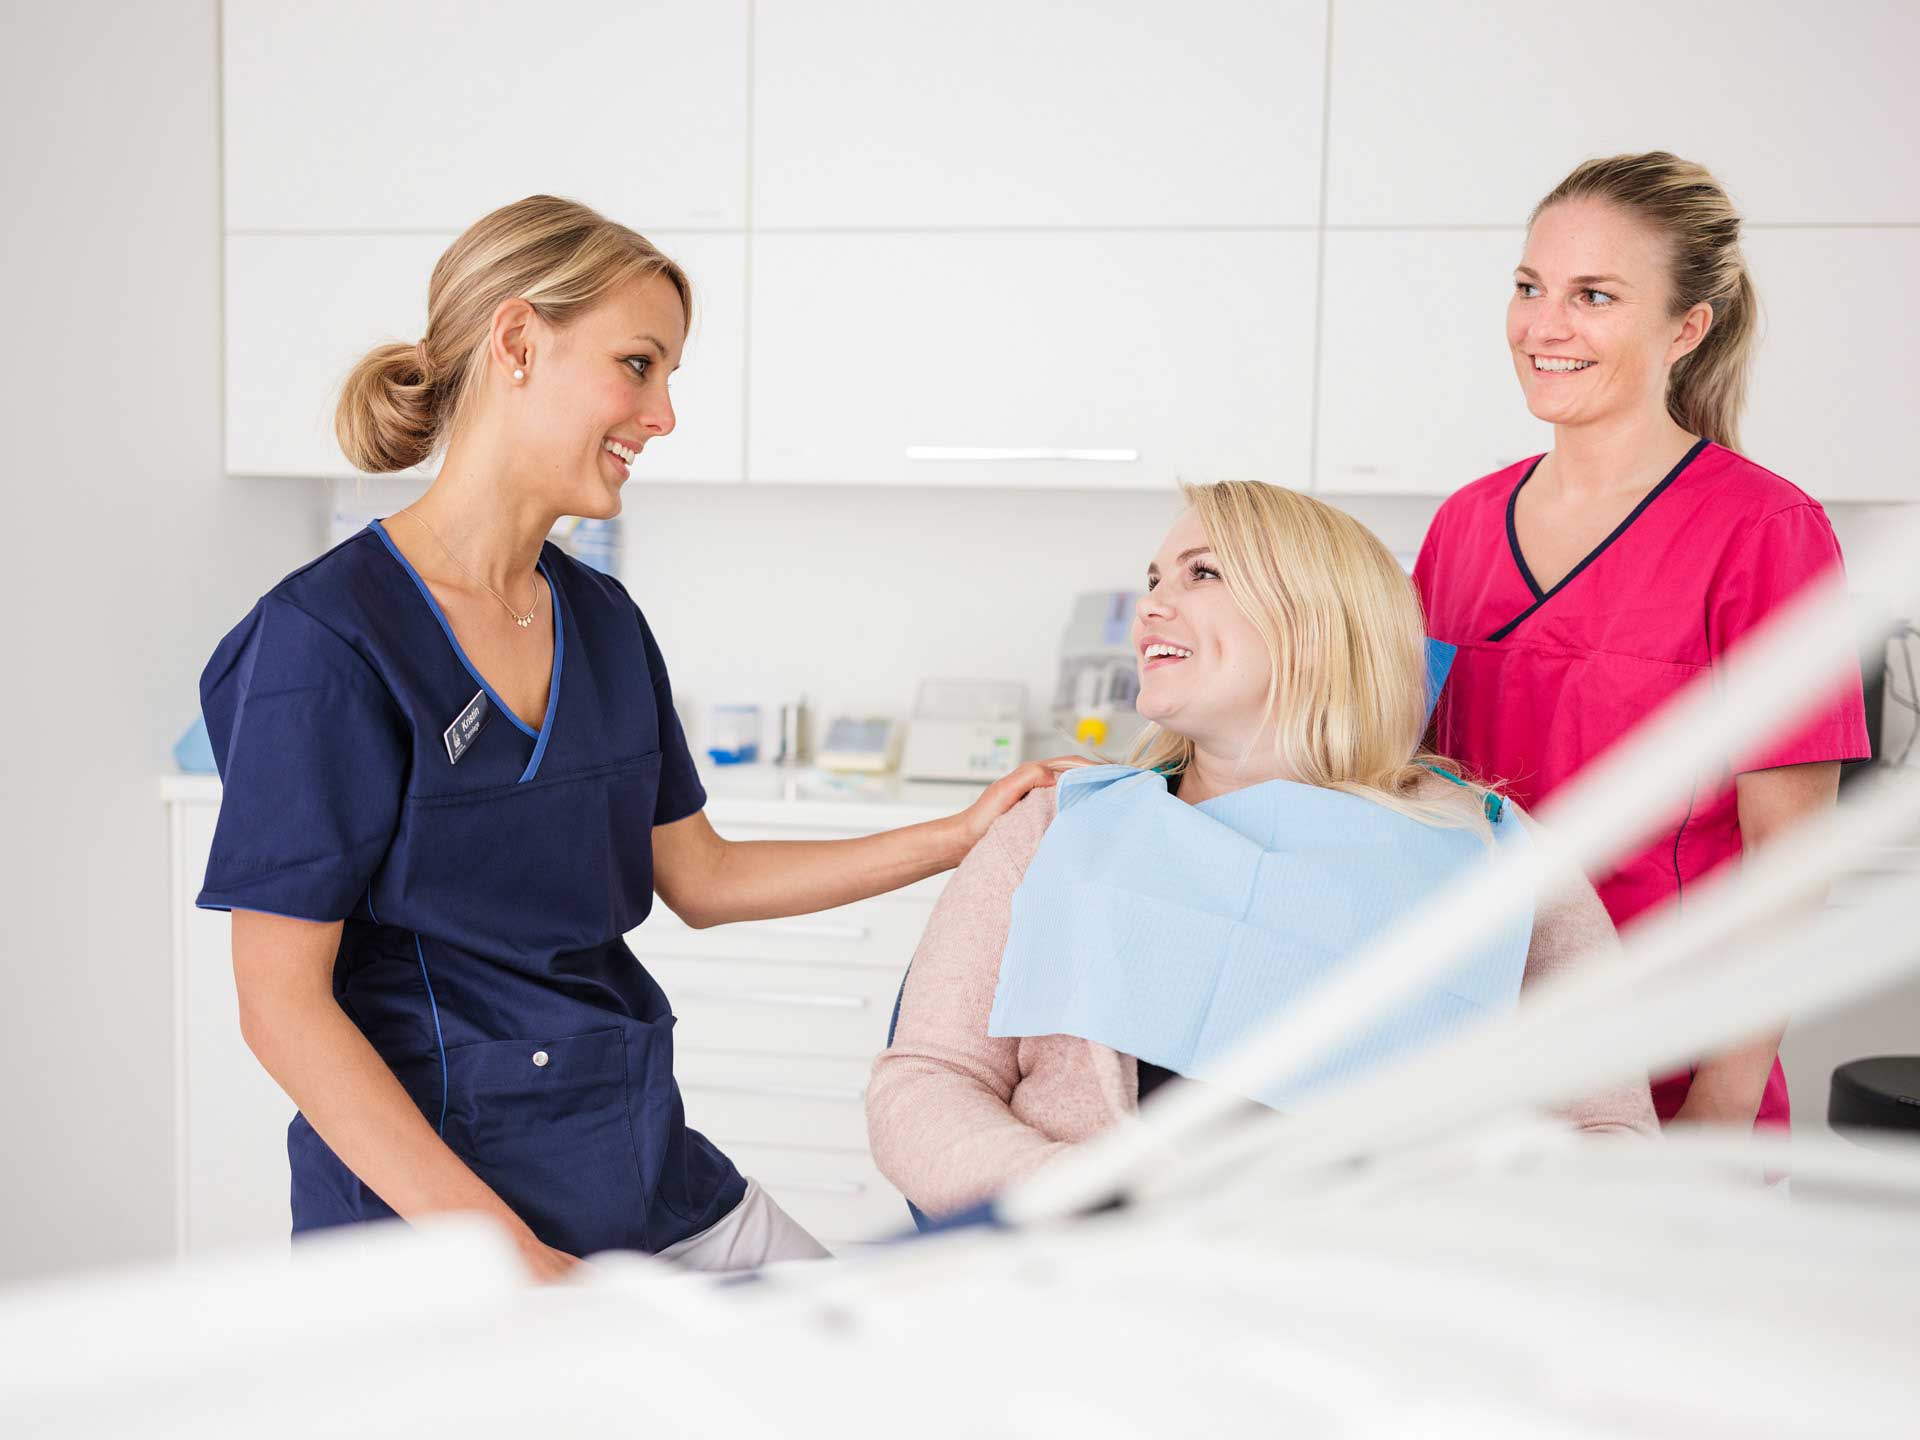 Bilde av en tannlege og en tannpleier sammen med en pasient som smiler